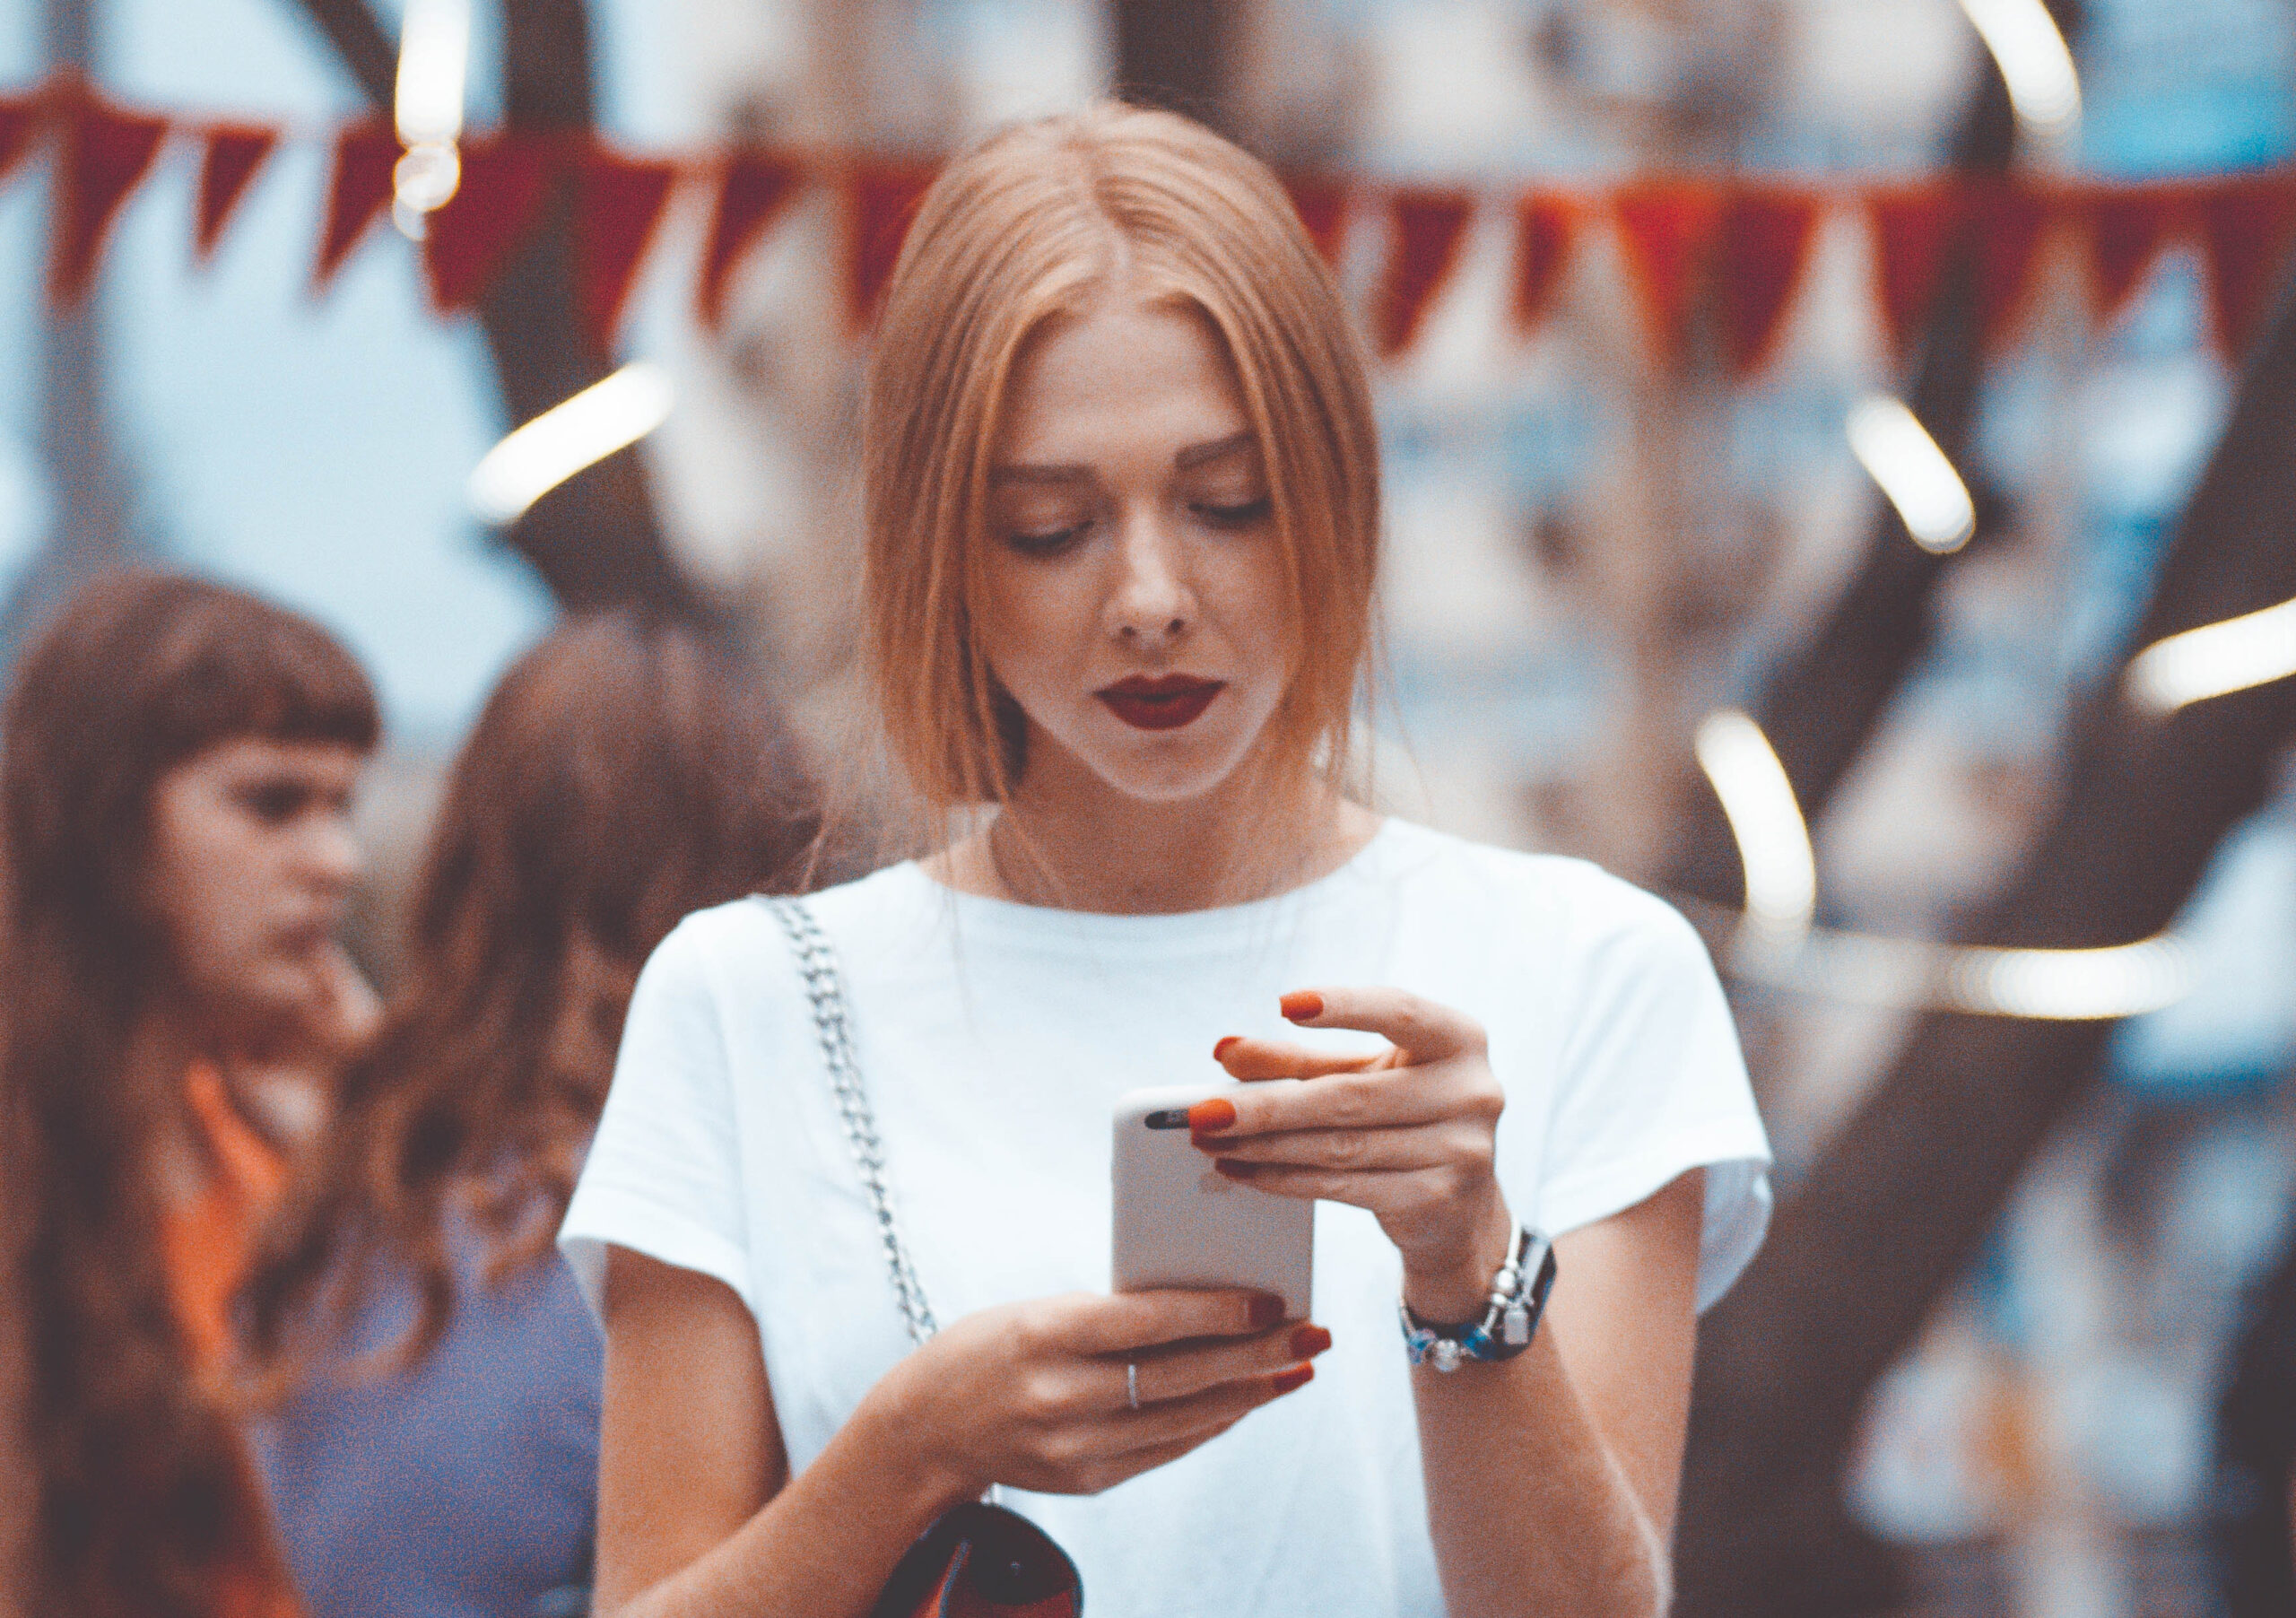 Młoda dziewczyna w białej bluzce spogląda w ekran telefonu.